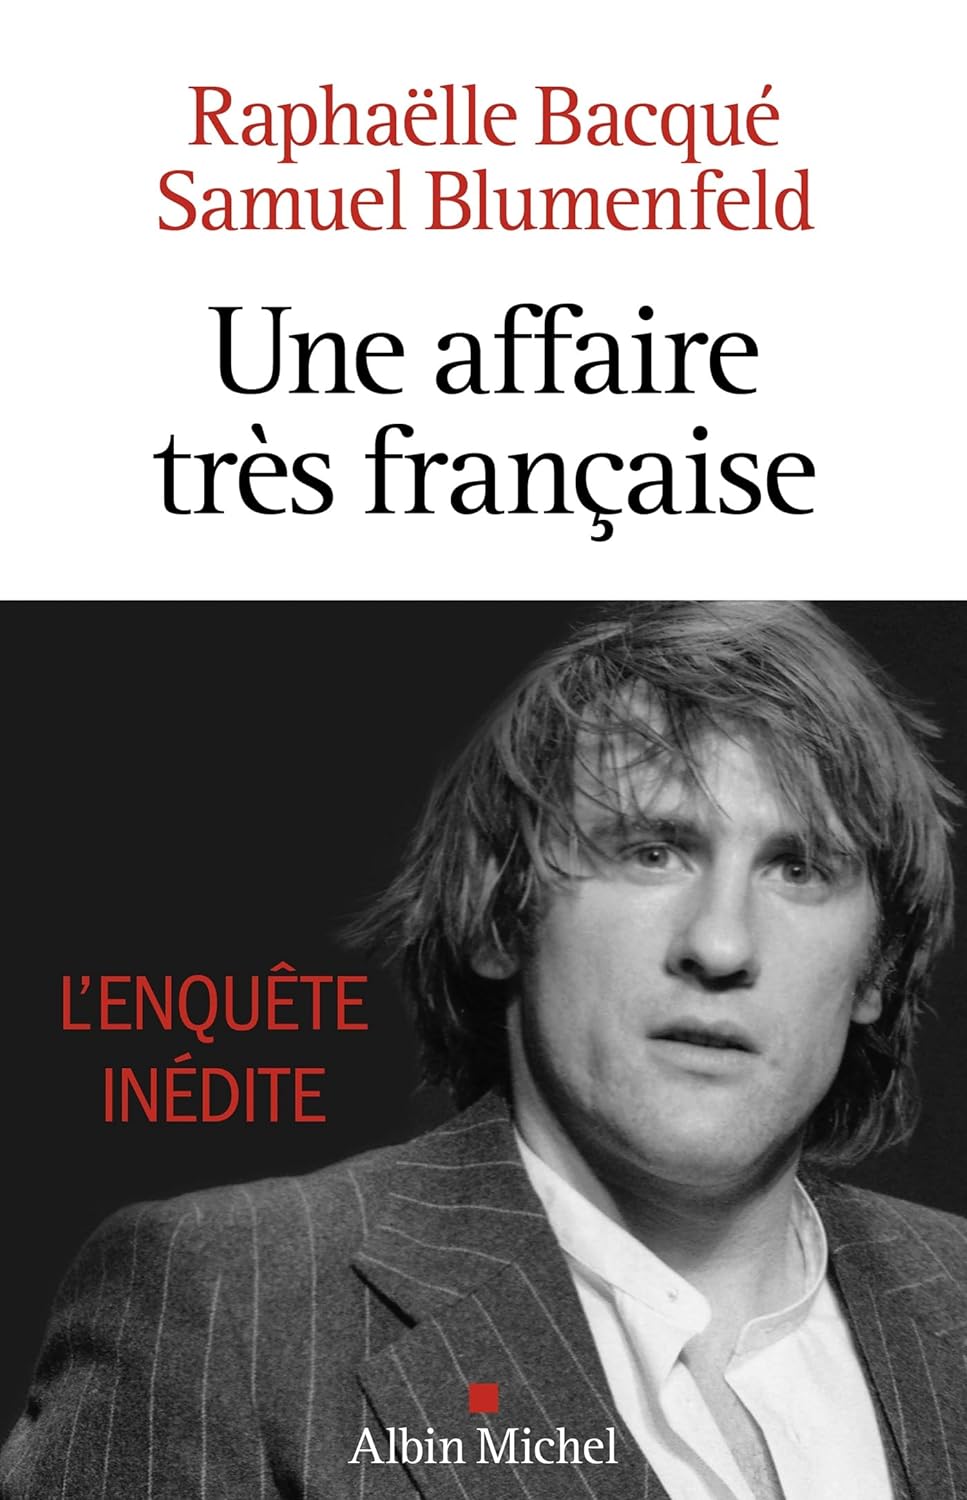 Une affaire très Française - Depardieu, l'enquête inédite - Raphaëlle Bacqué (Auteur) - Samuel Blumenfeld (Auteur) - Biographie (broché)